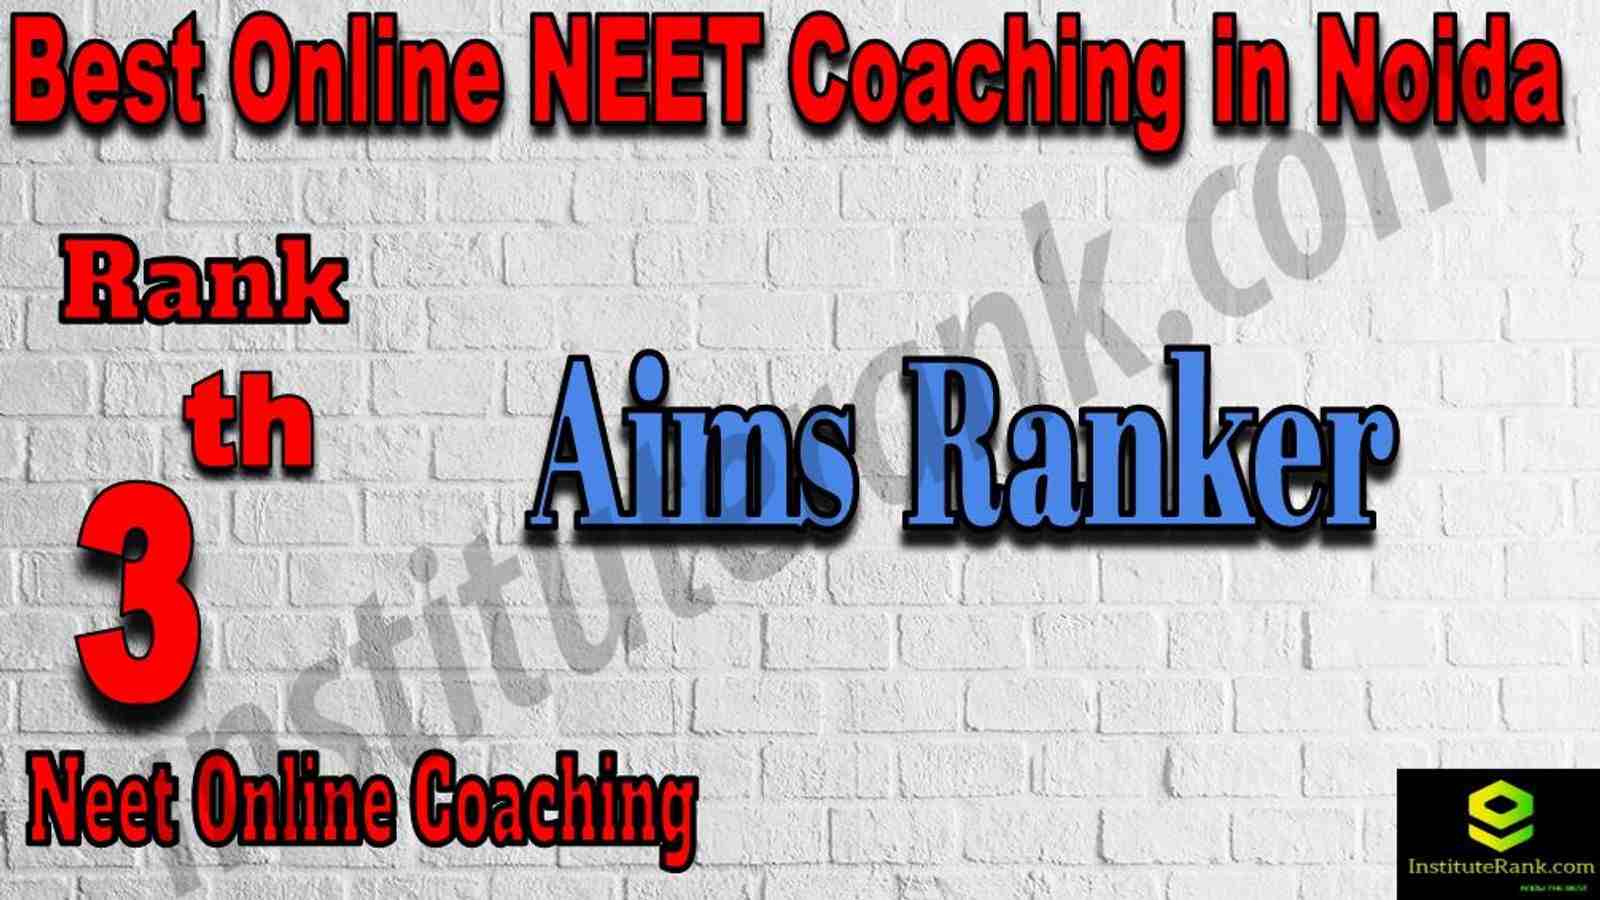 3rd Best Online NEET Coaching in Noida